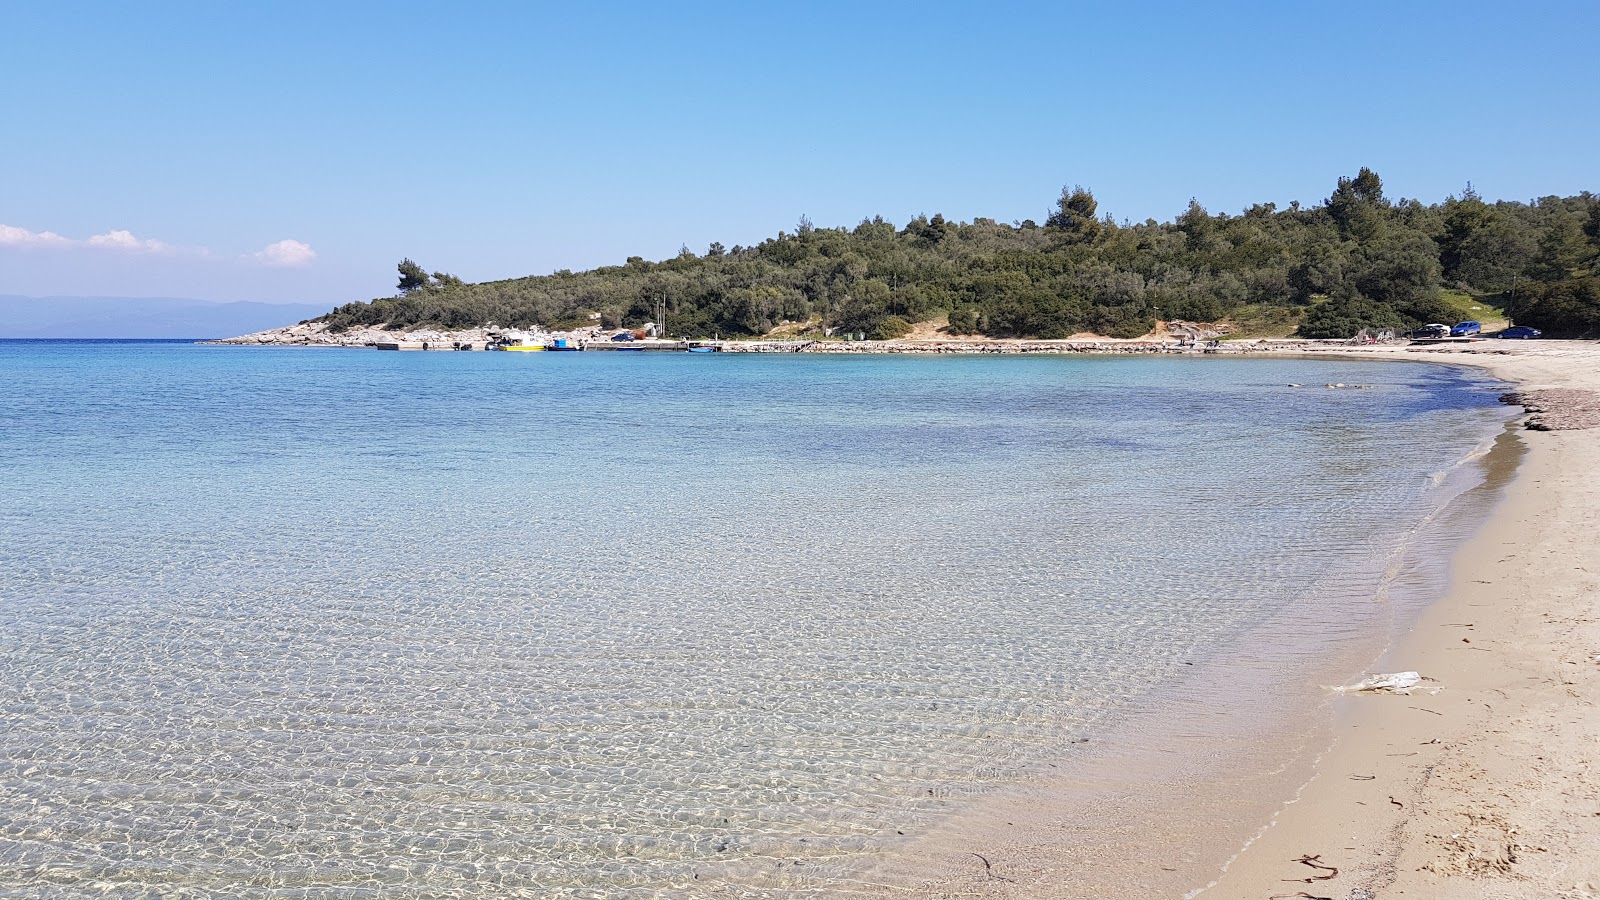 Fotografie cu Paliouri beach cu o suprafață de nisip strălucitor